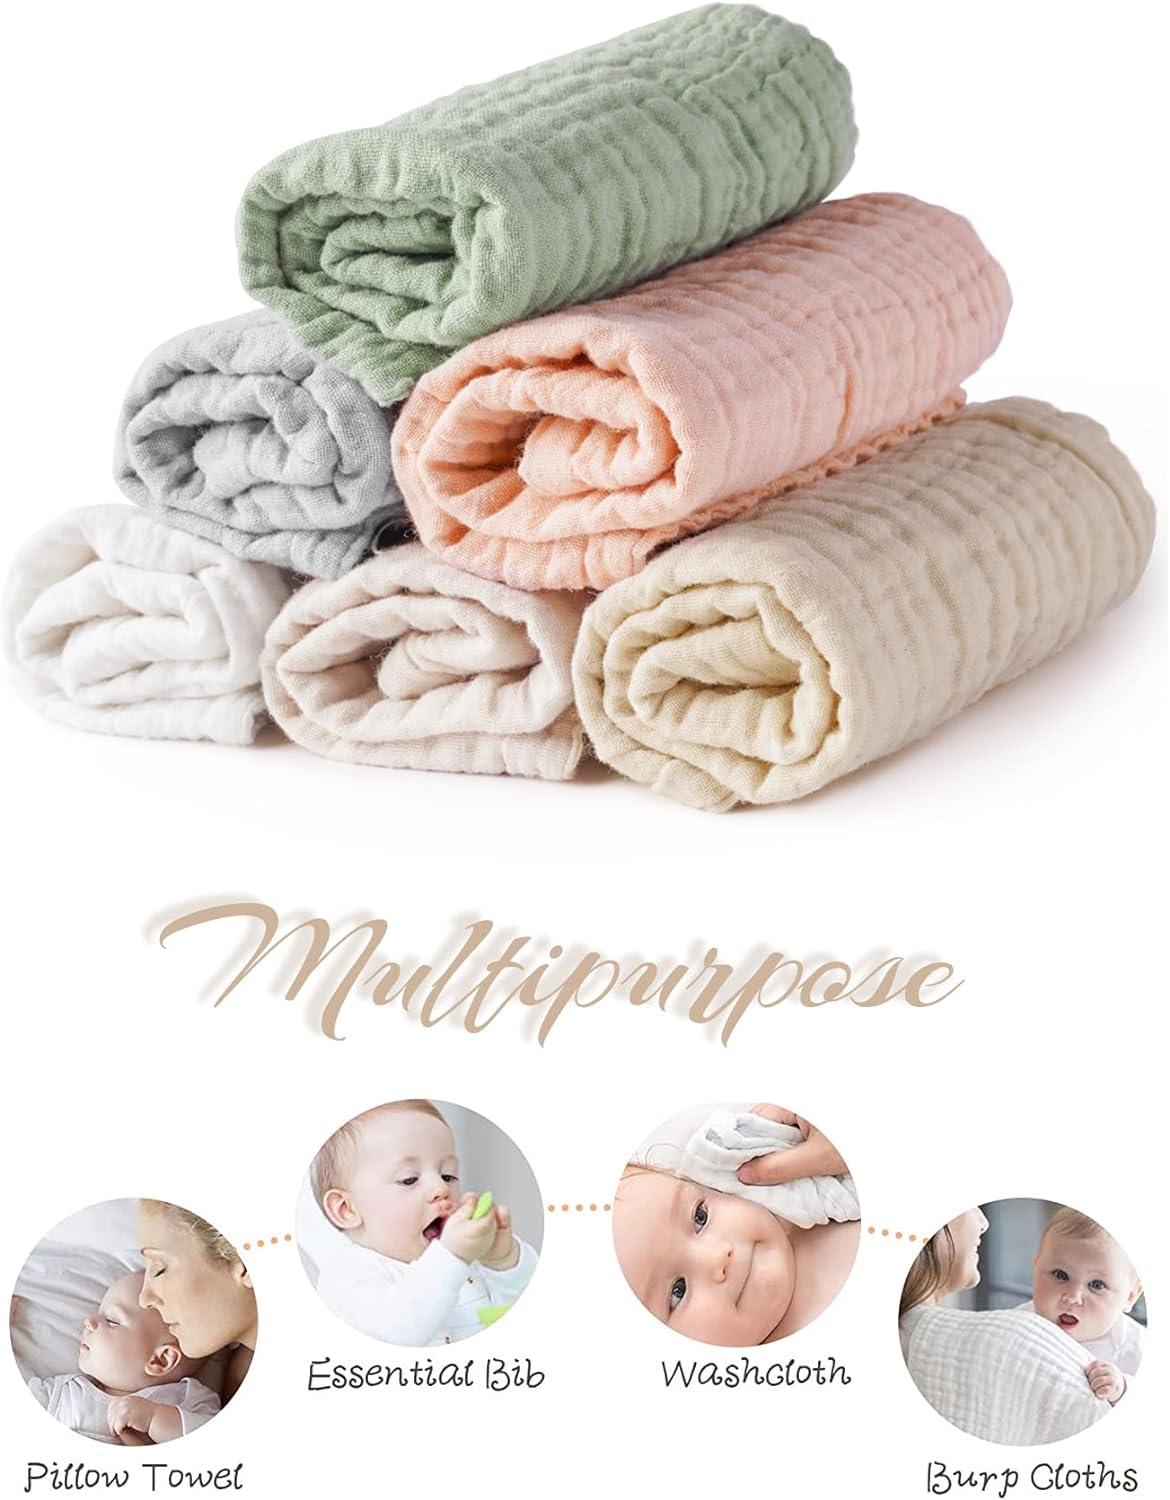 6 Pack Muslin Burp Cloths - Ultra-Soft 100% Cotton Baby Boy & Girl Newborn  Es